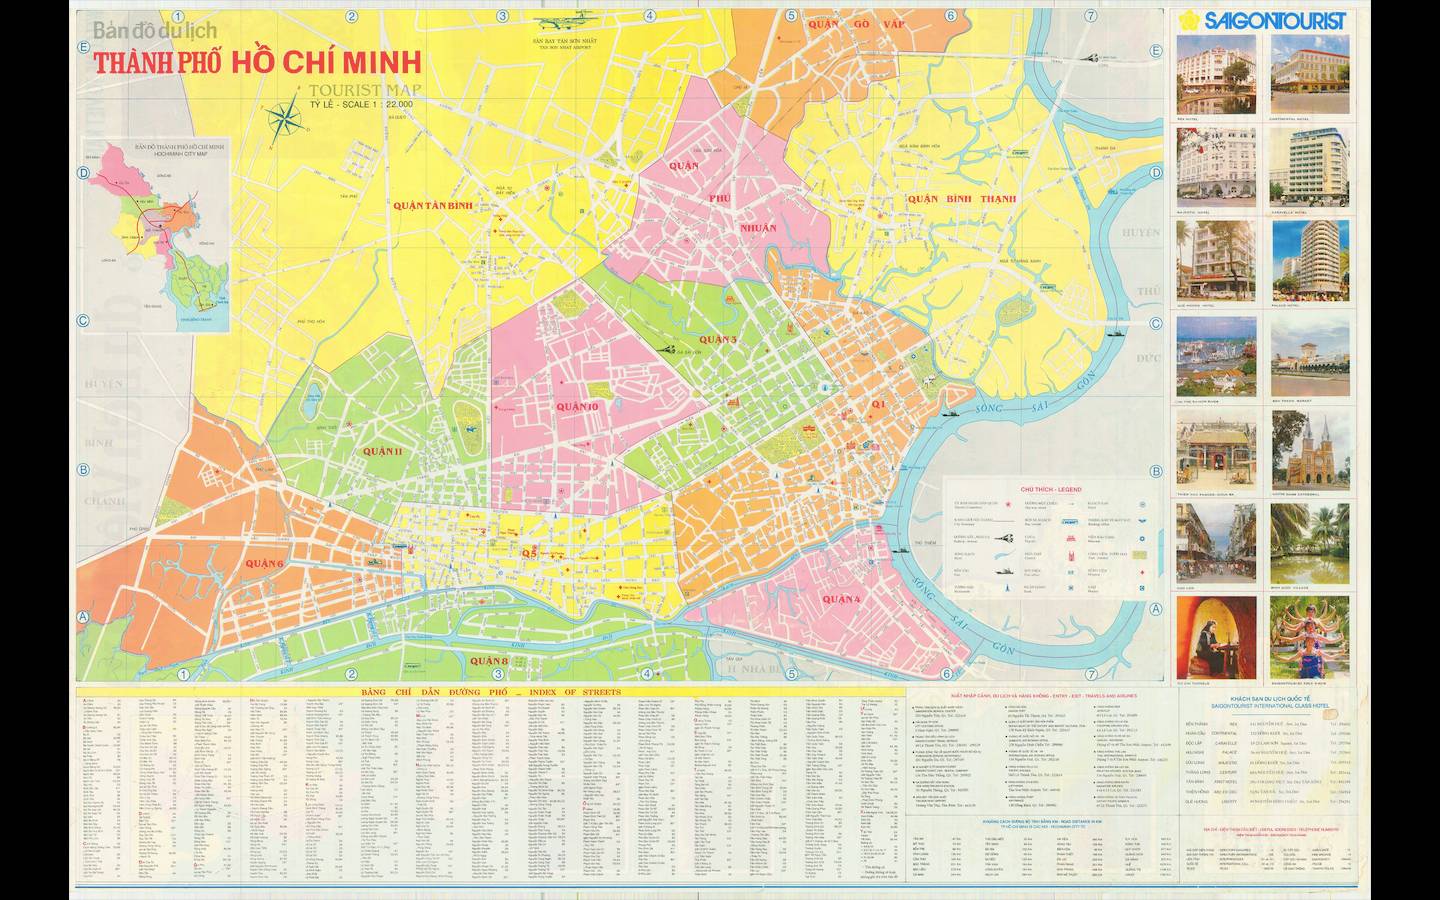 Bản đồ thành phố Hồ Chí Minh Khổ Lớn năm 2024 của chúng tôi sẽ mang đến những trải nghiệm thú vị cho bạn. Với độ phân giải cao, độ chính xác tuyệt vời và cập nhật đầy đủ những thông tin mới nhất, bạn hoàn toàn có thể dễ dàng điều hướng trên mọi nẻo đường.